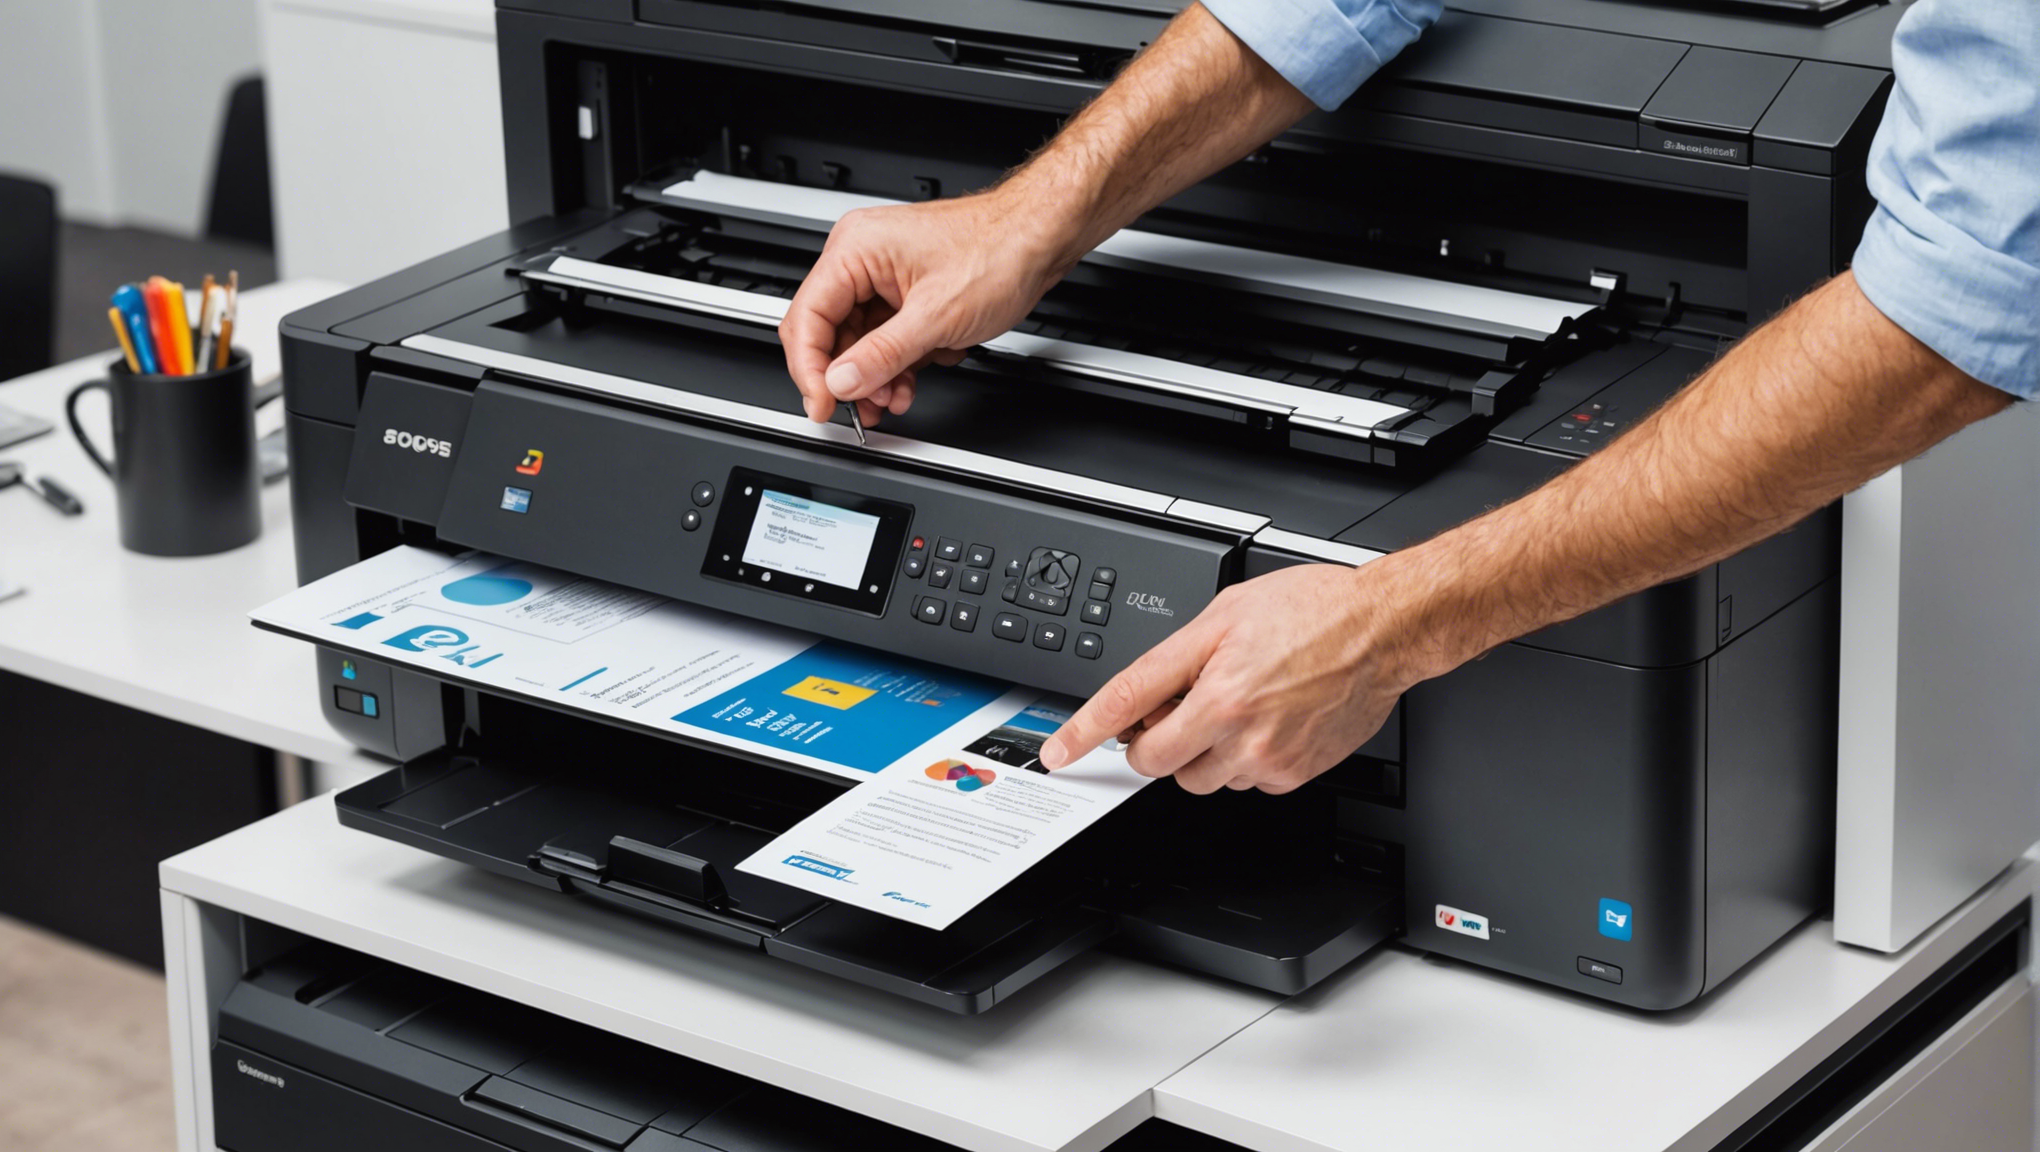 découvrez notre gamme d'imprimantes professionnelles à prix abordables et apprenez-en plus sur les caractéristiques essentielles d'une imprimante professionnelle abordable.